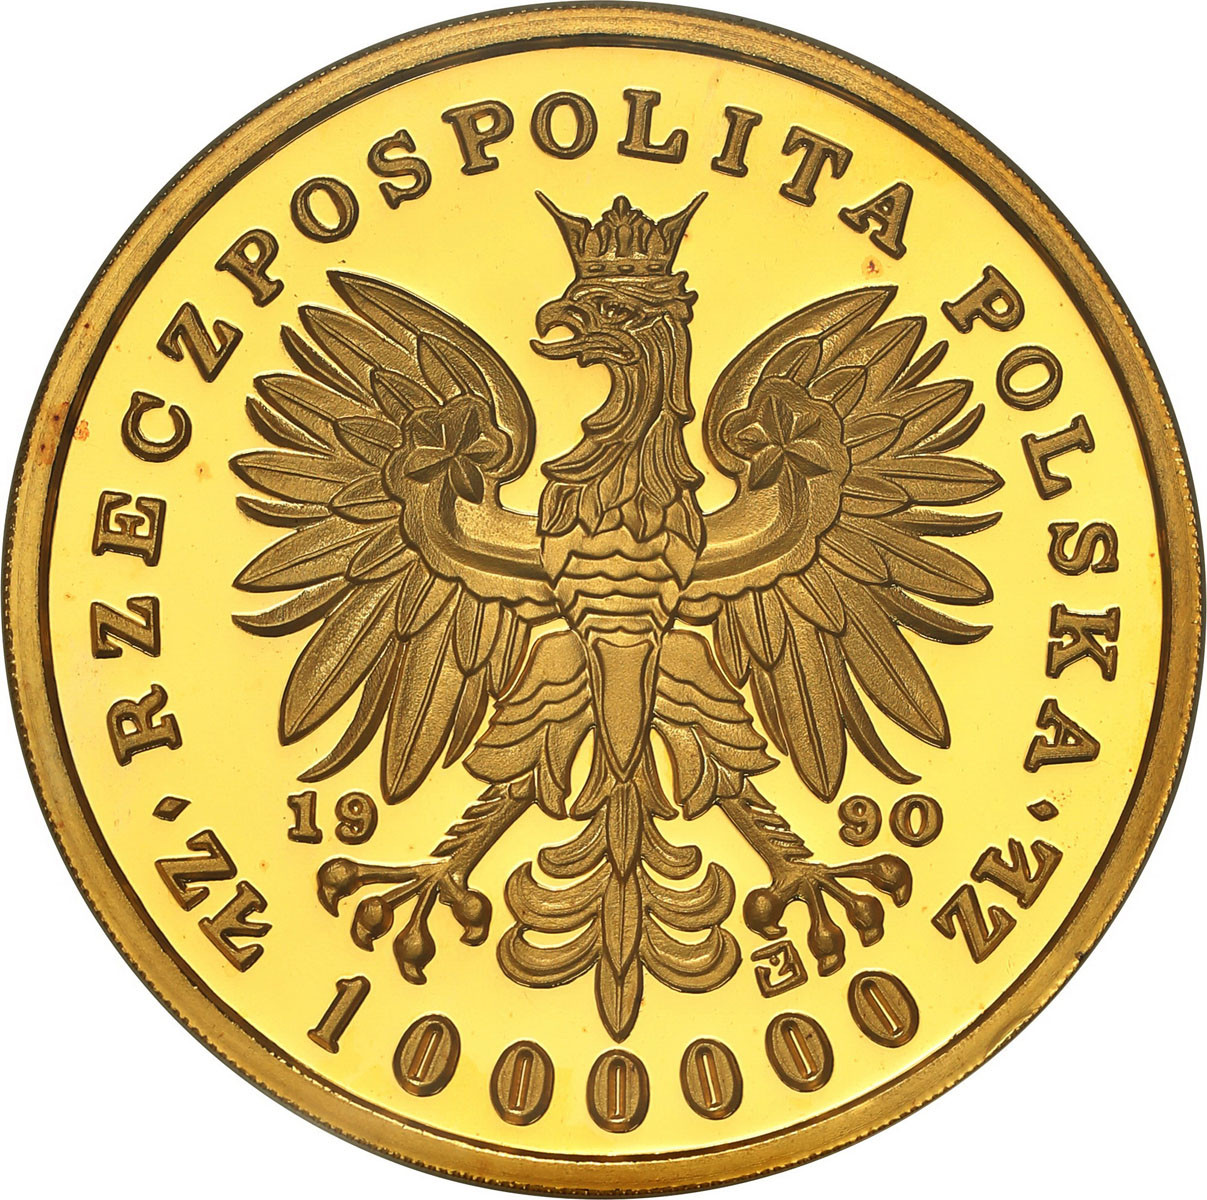 TRYPTYK Złoto 1.000.000 złotych 1990 Fryderyk Chopin NGC PF65 ULTRA CAMEO (MAX) – NAKŁAD 1 SZTUKA! 12 Uncji Złota